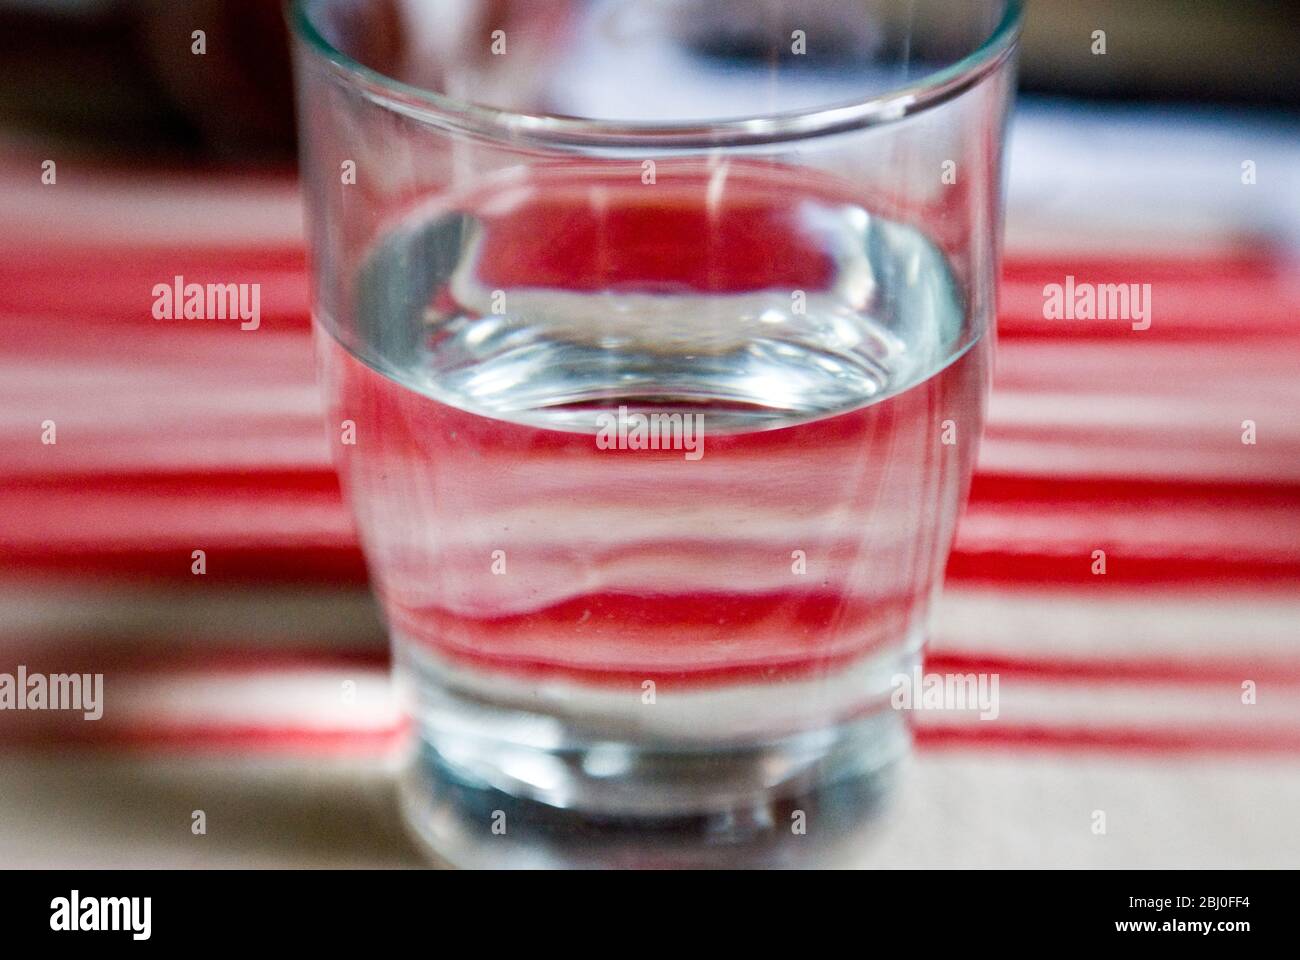 Glas Wasser auf rot-cremefarbenem gestreiftem Tuch. Aufgenommen mit einer Lensbaby-Linse für unscharfe Kanten - Stockfoto